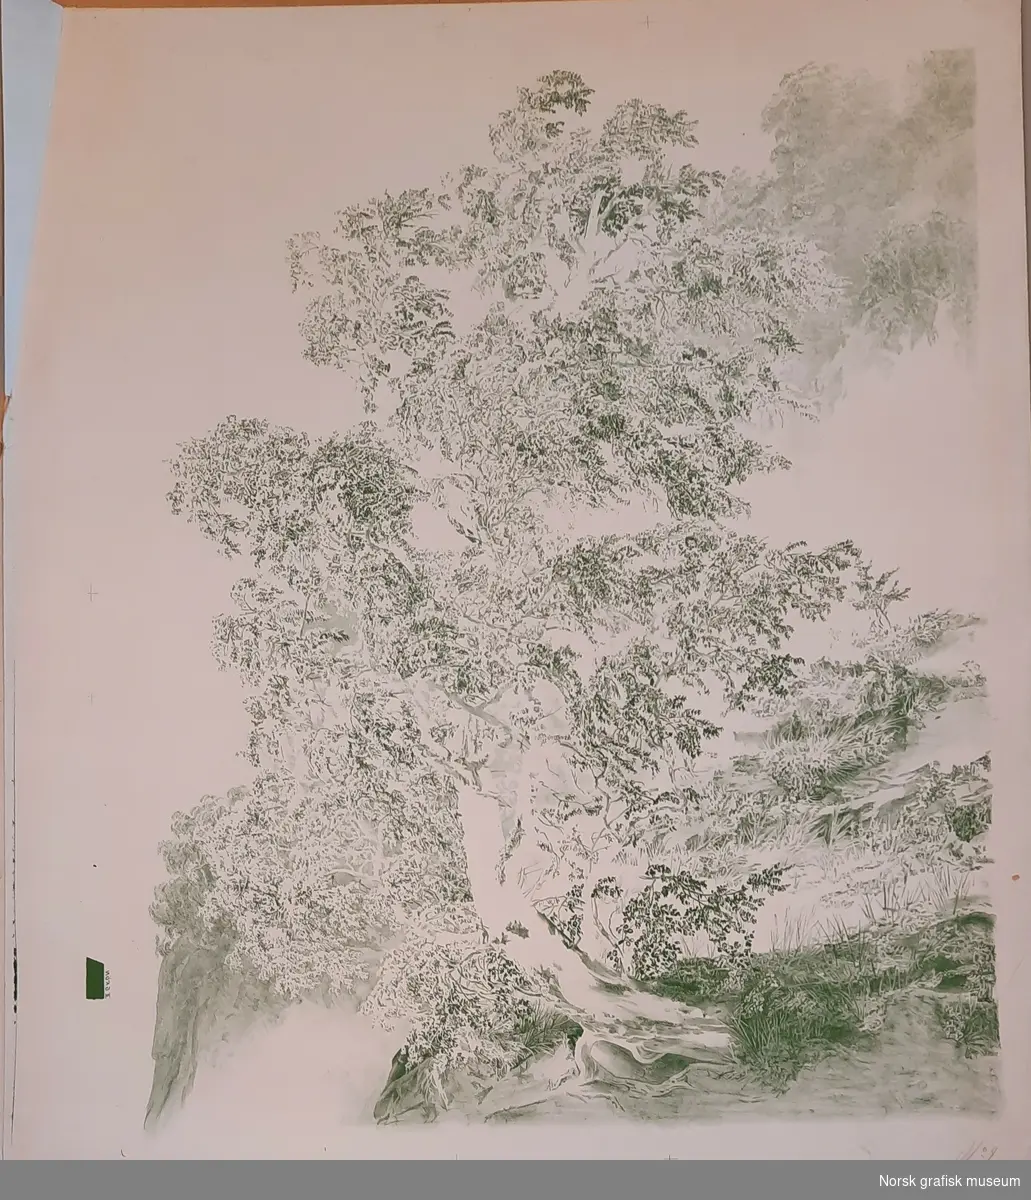 Trykkark merket "No. 4", håndskrevet med blyant. Litografisk reproduksjon av I. C. Dahls maleri "Birk i storm" (eller "Bjerk i storm") fra 1849, utført med femten ulike trykkfarger og med en litografisk stein per farge. Dette trykket er med fargen "II GRÖN".